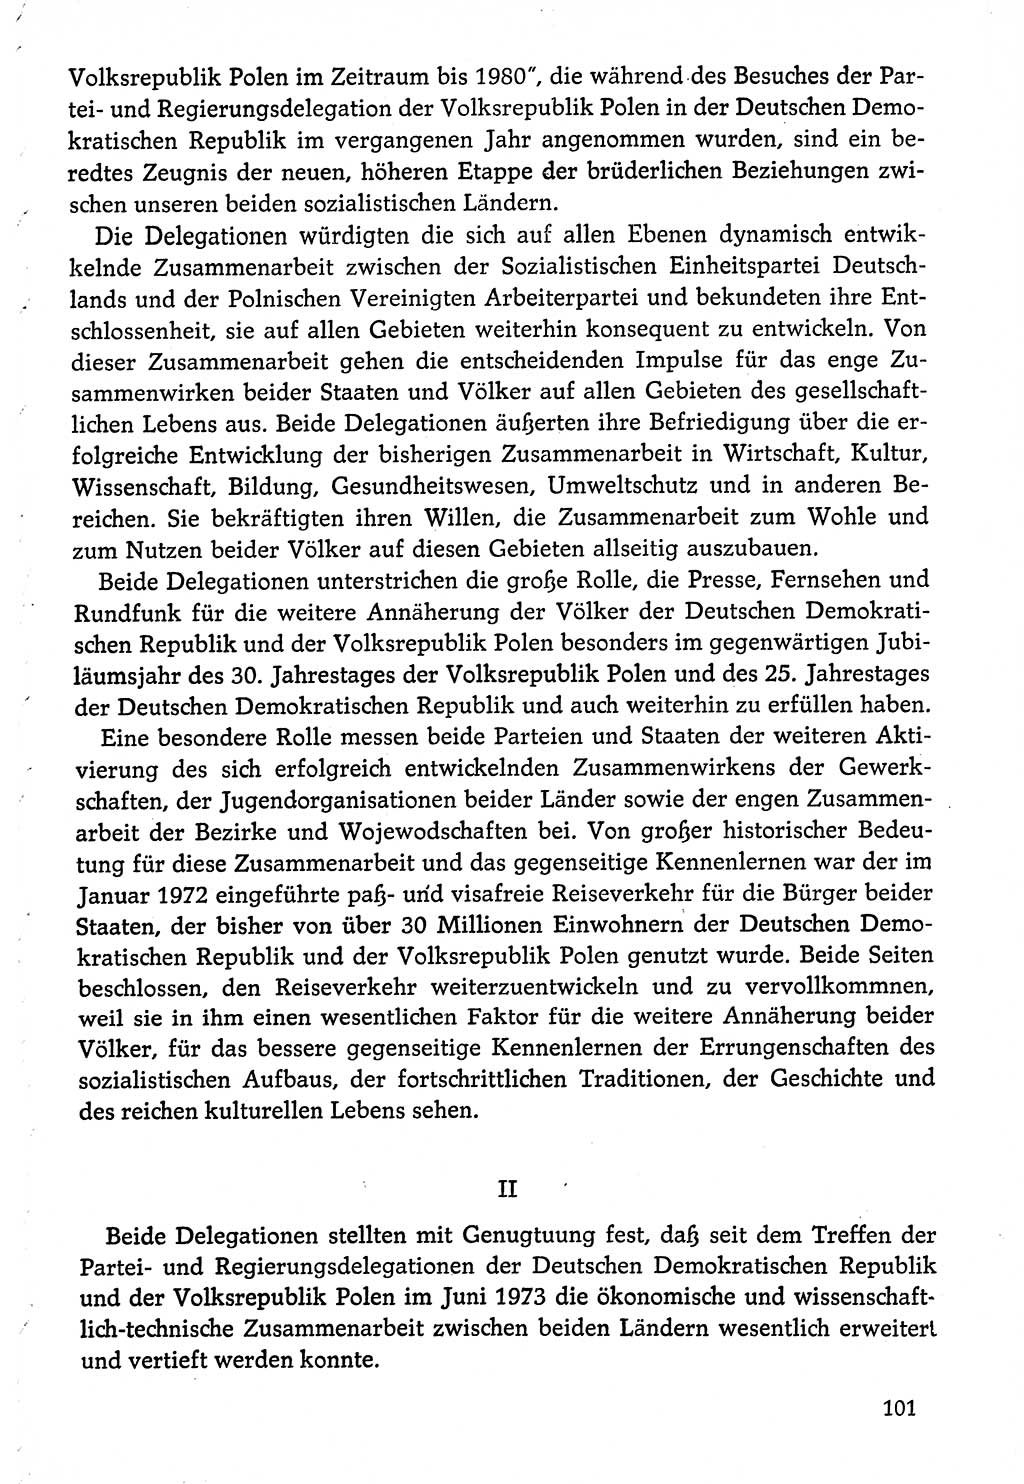 Dokumente der Sozialistischen Einheitspartei Deutschlands (SED) [Deutsche Demokratische Republik (DDR)] 1974-1975, Seite 101 (Dok. SED DDR 1978, Bd. ⅩⅤ, S. 101)